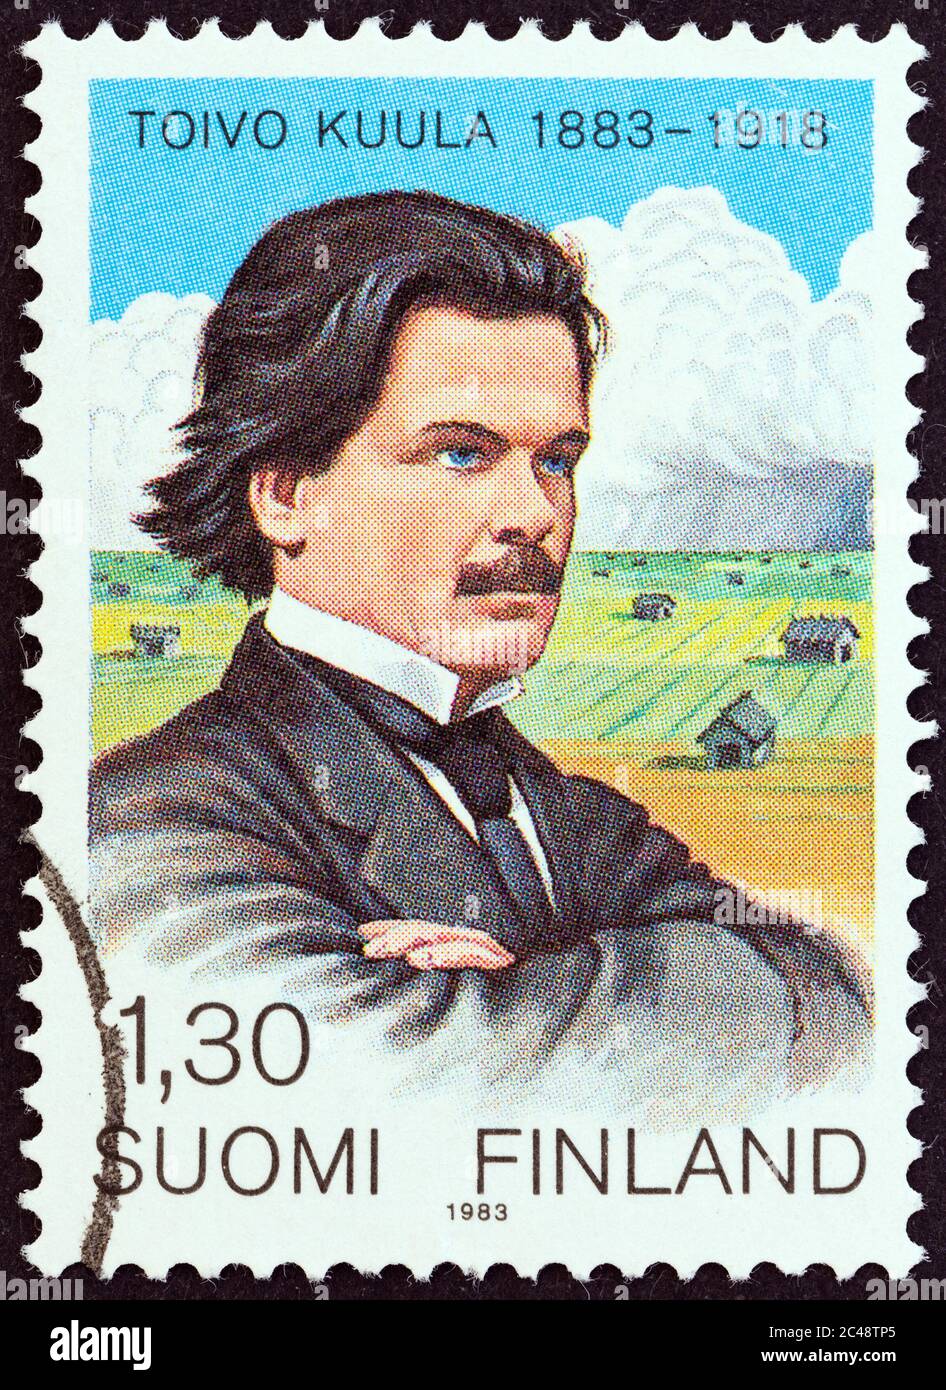 FINNLAND - UM 1983: Eine in Finnland gedruckte Briefmarke, die zum 100. Geburtstag von Toivo Kuula herausgegeben wurde, zeigt den Komponisten Toivo Kuula und Ostrobothnien. Stockfoto